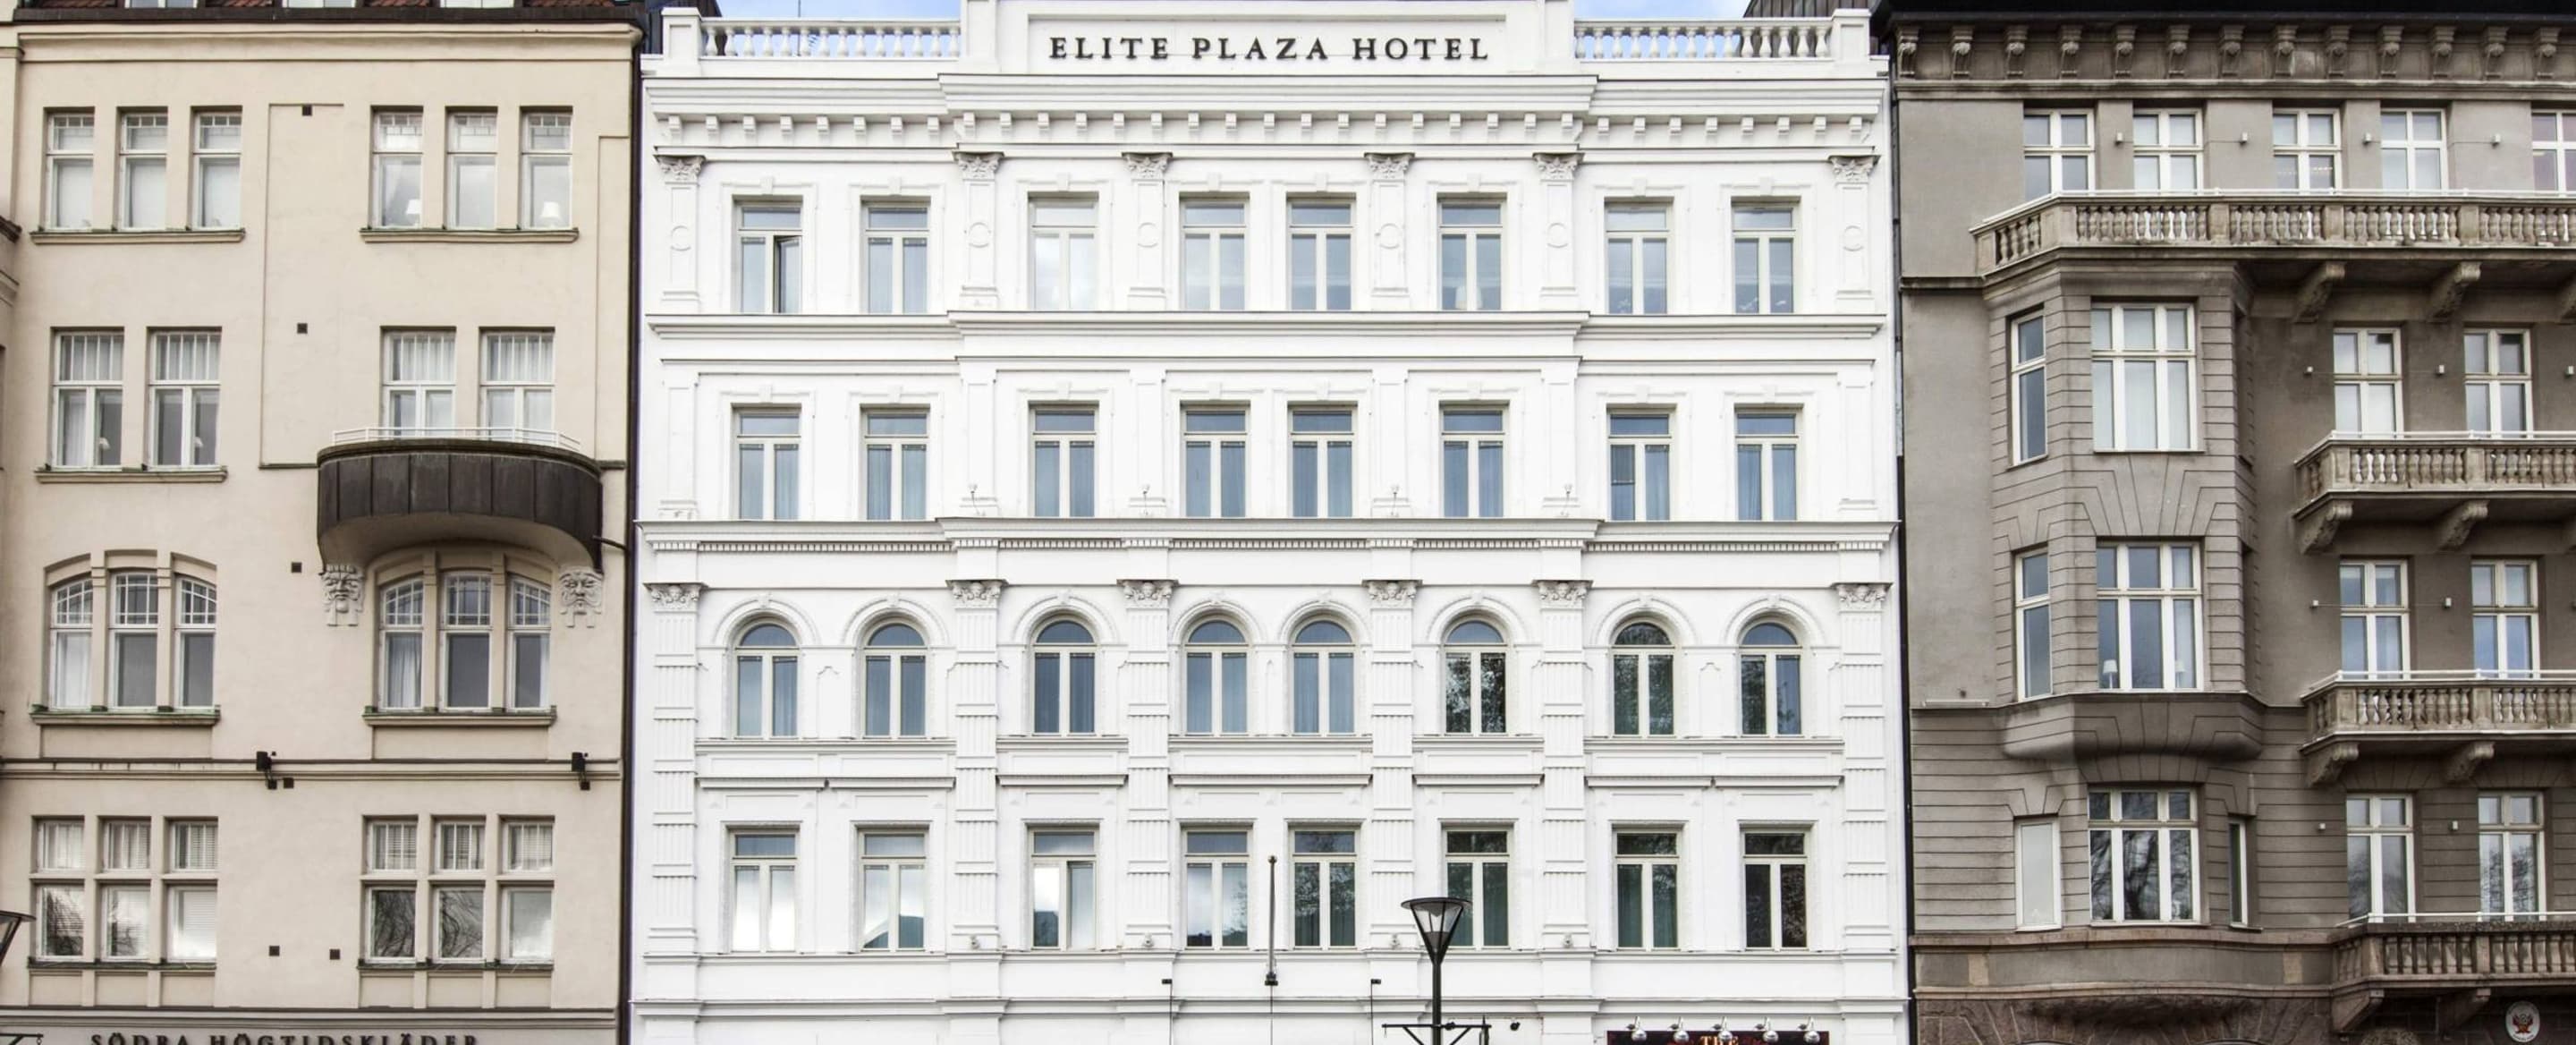 Elite plaza hotel malmo